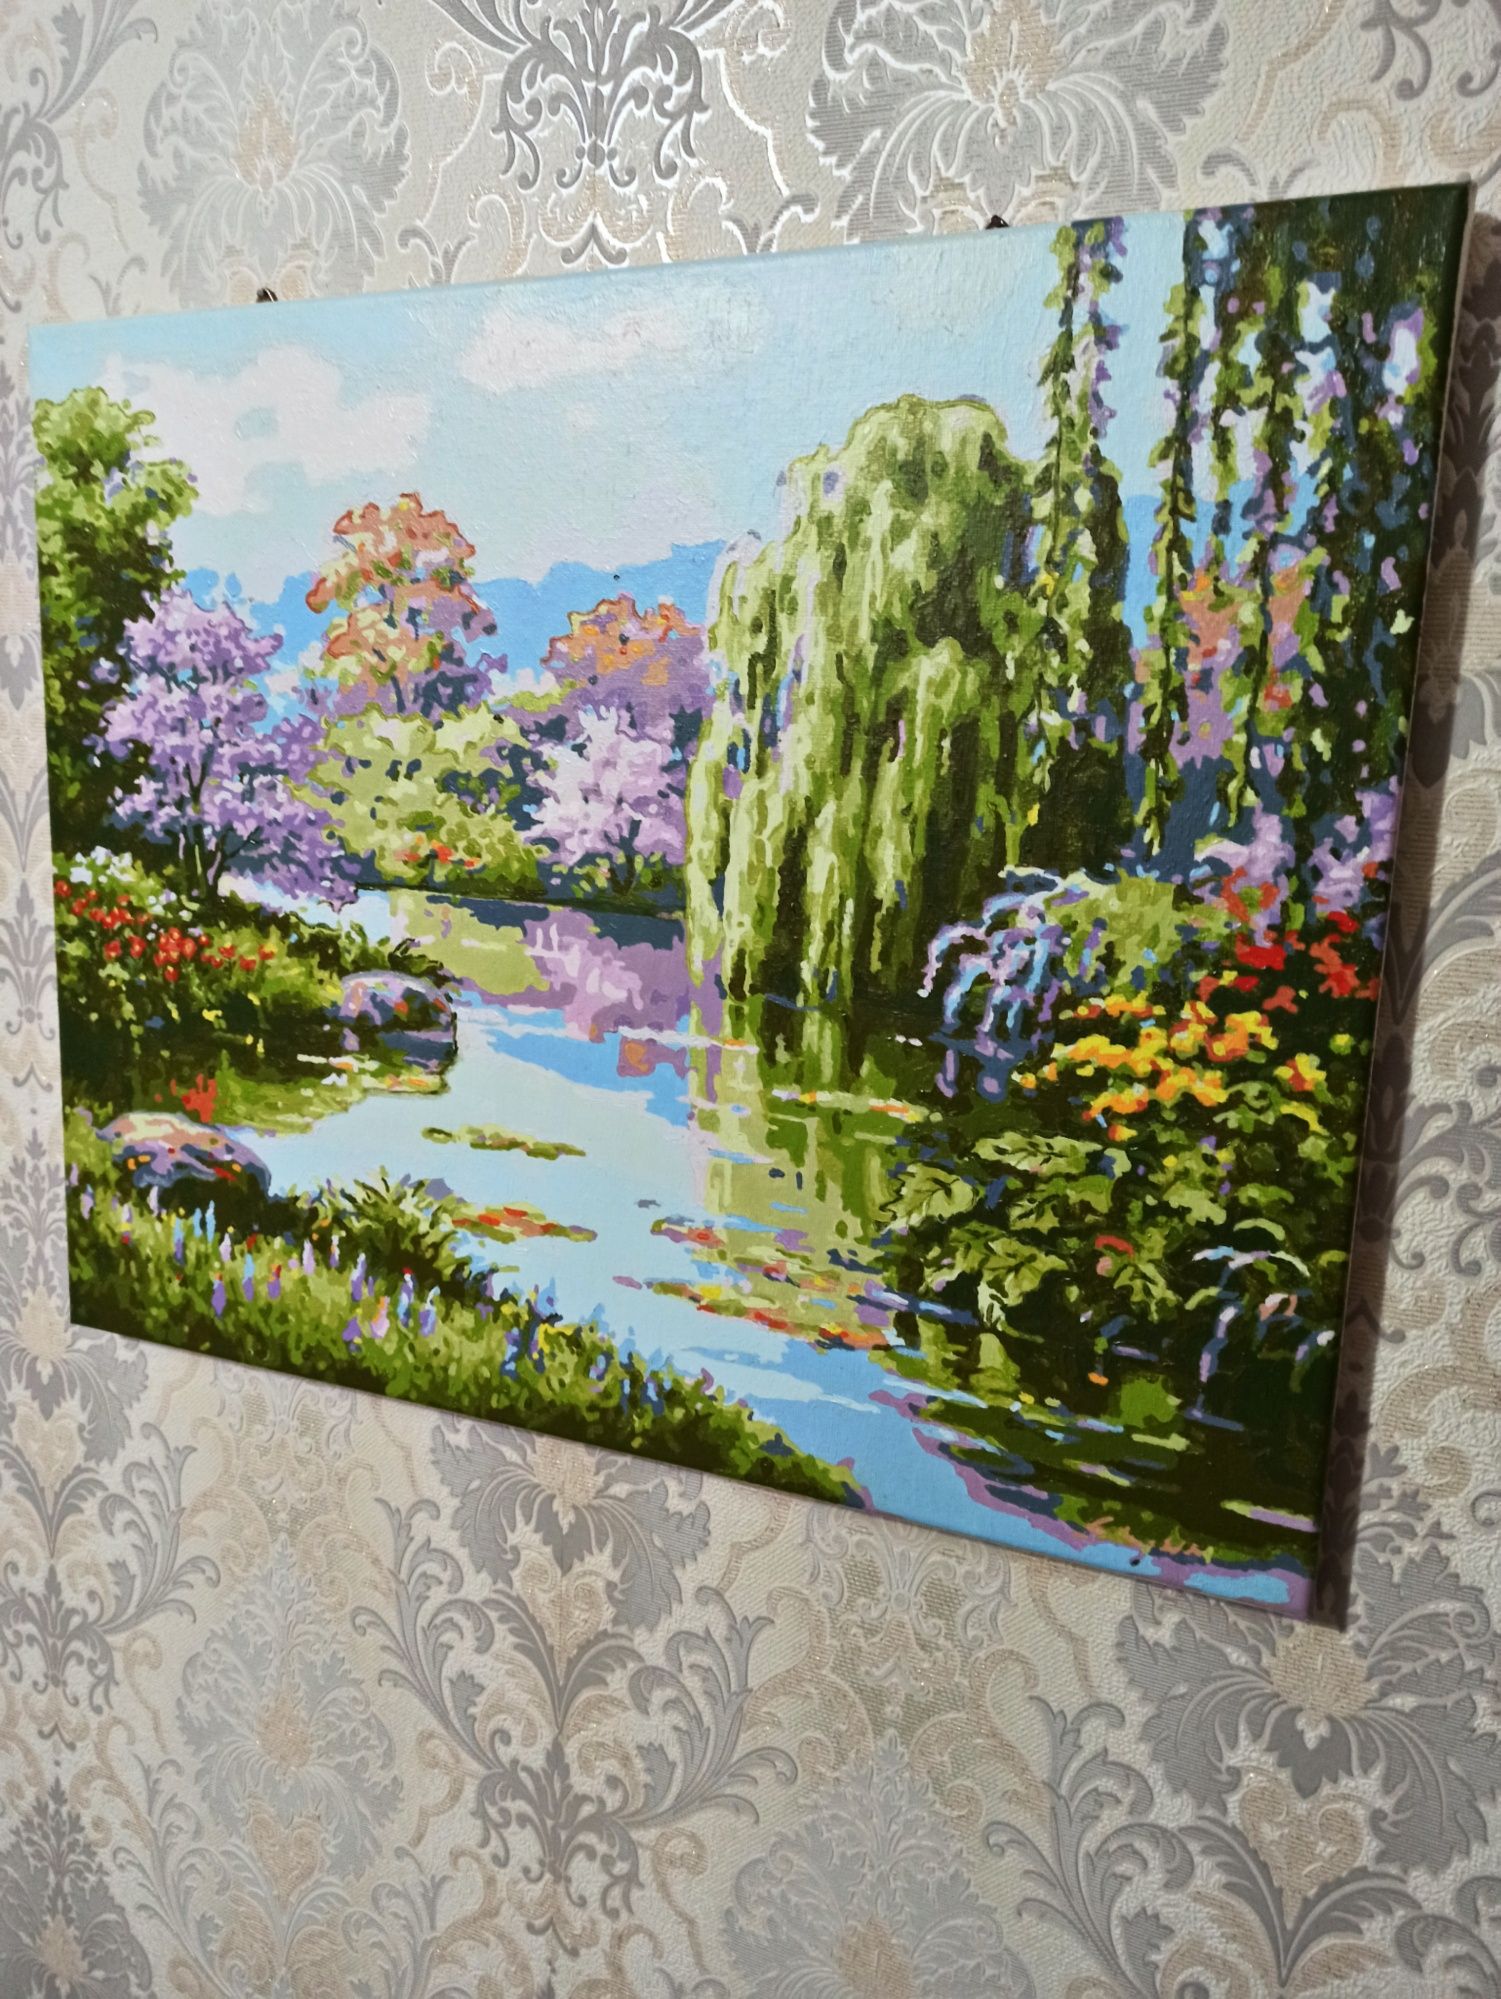 Продам картину "Лесное озеро" 40×50 см нарисованную по номерам.